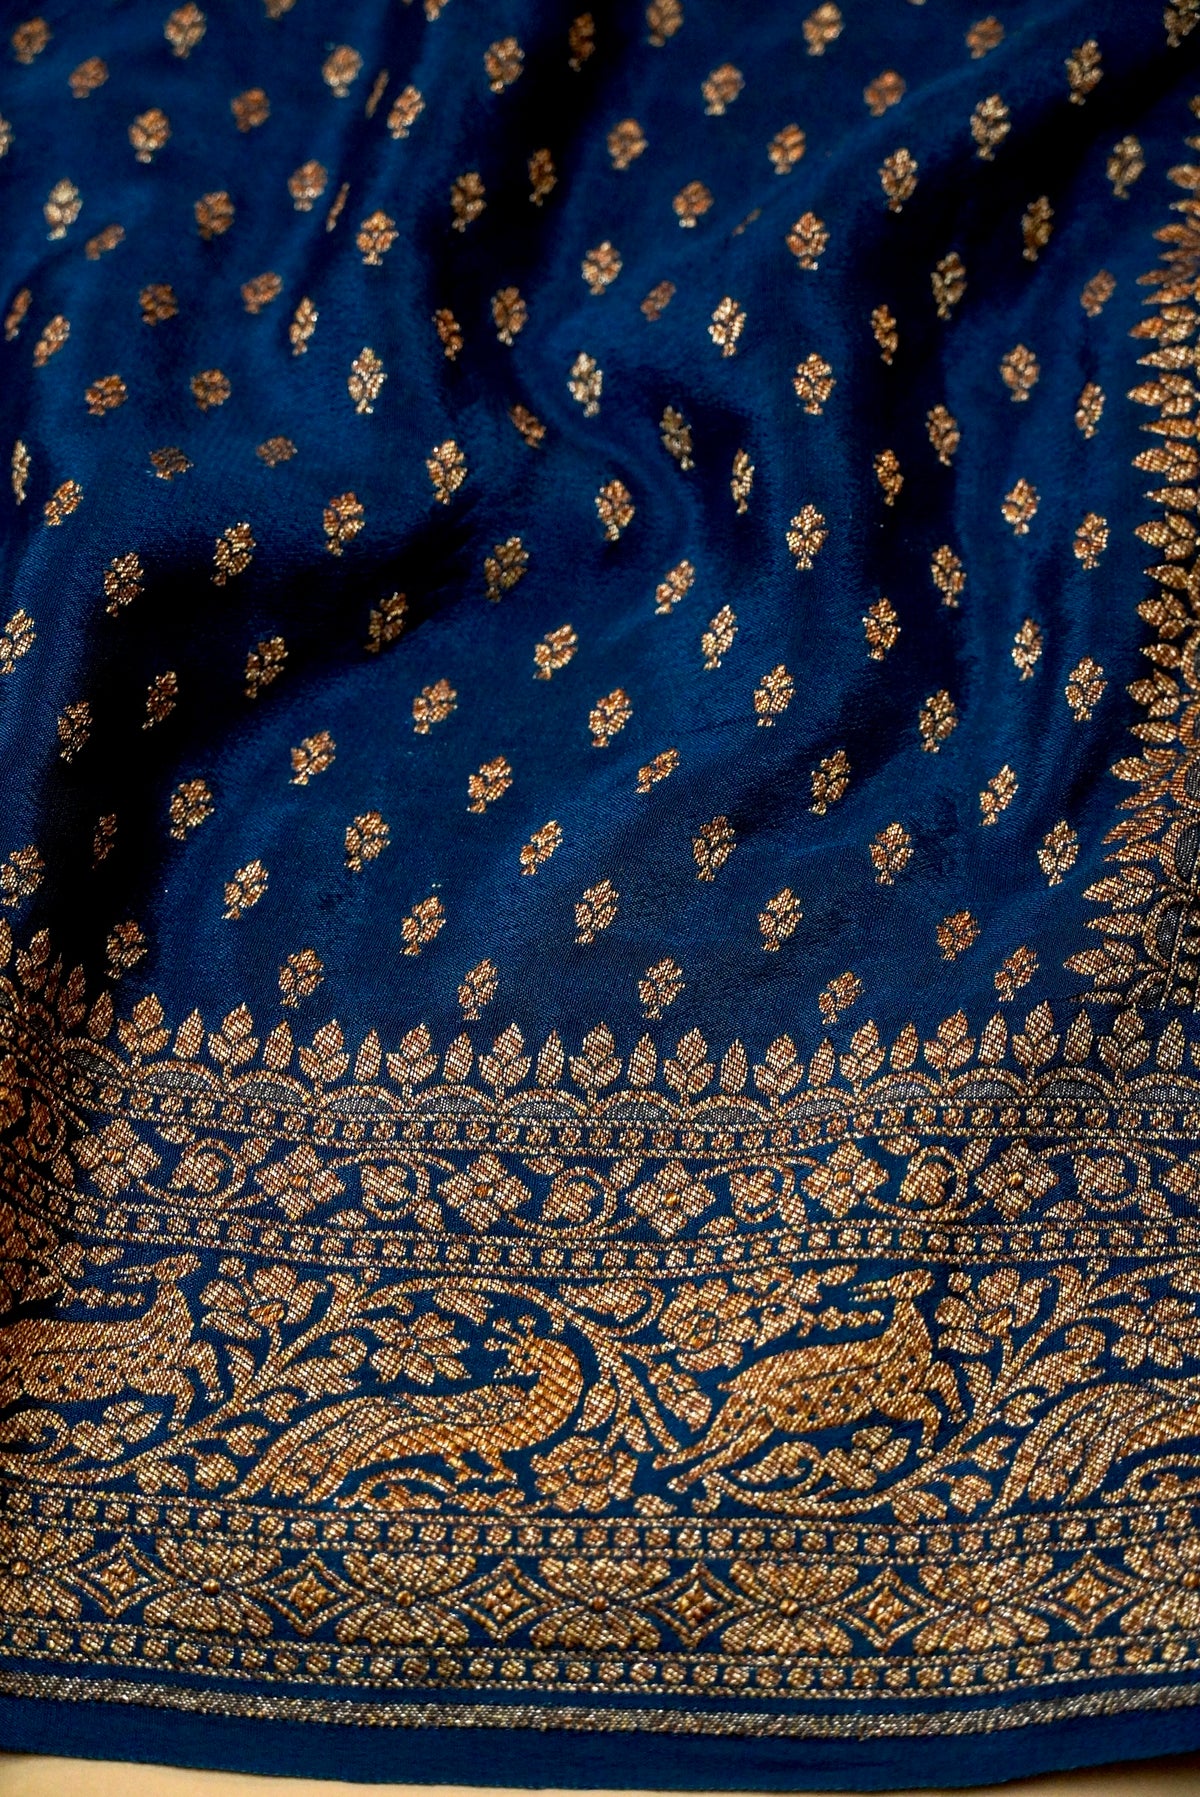 Handwoven Peacock Banarasi Crepe Georgette Saree